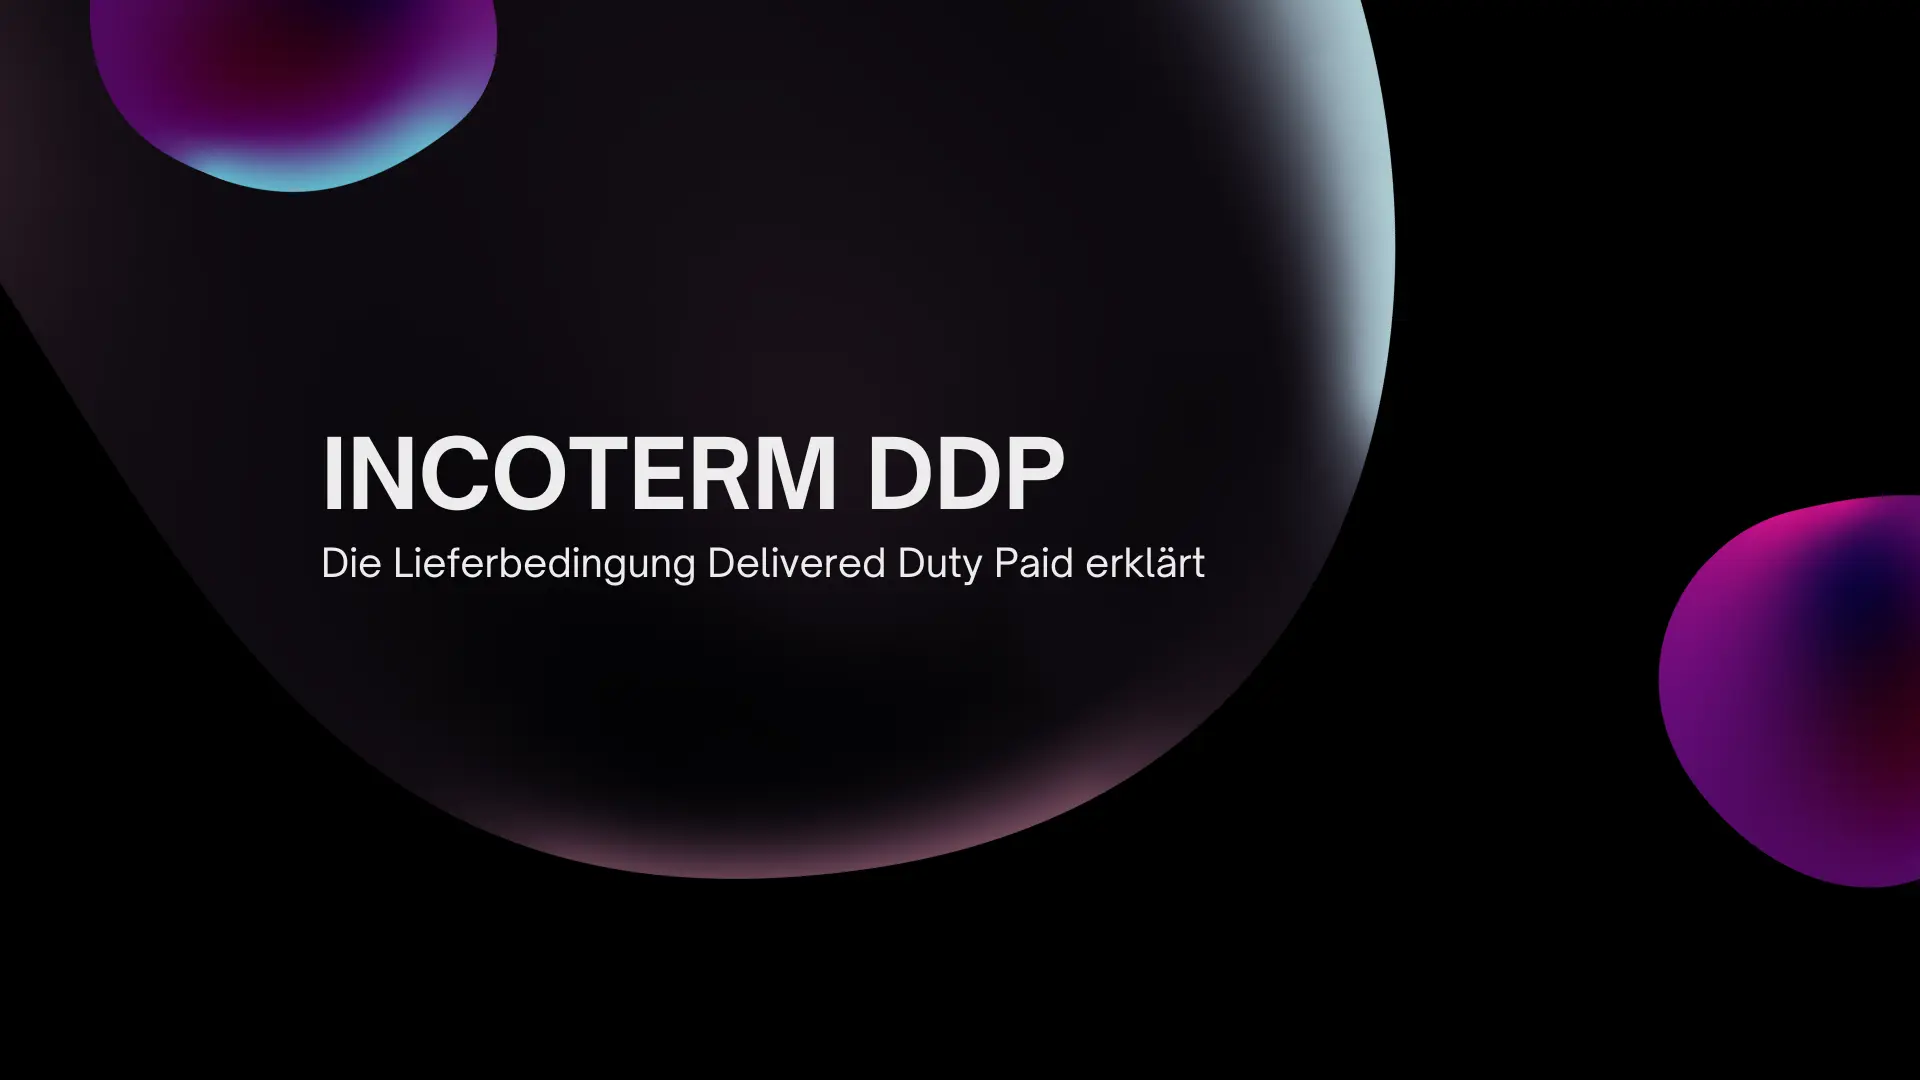 Incoterm DDP – Eine umfassende Analyse der Lieferbedingung Delivered, Duty, Paid